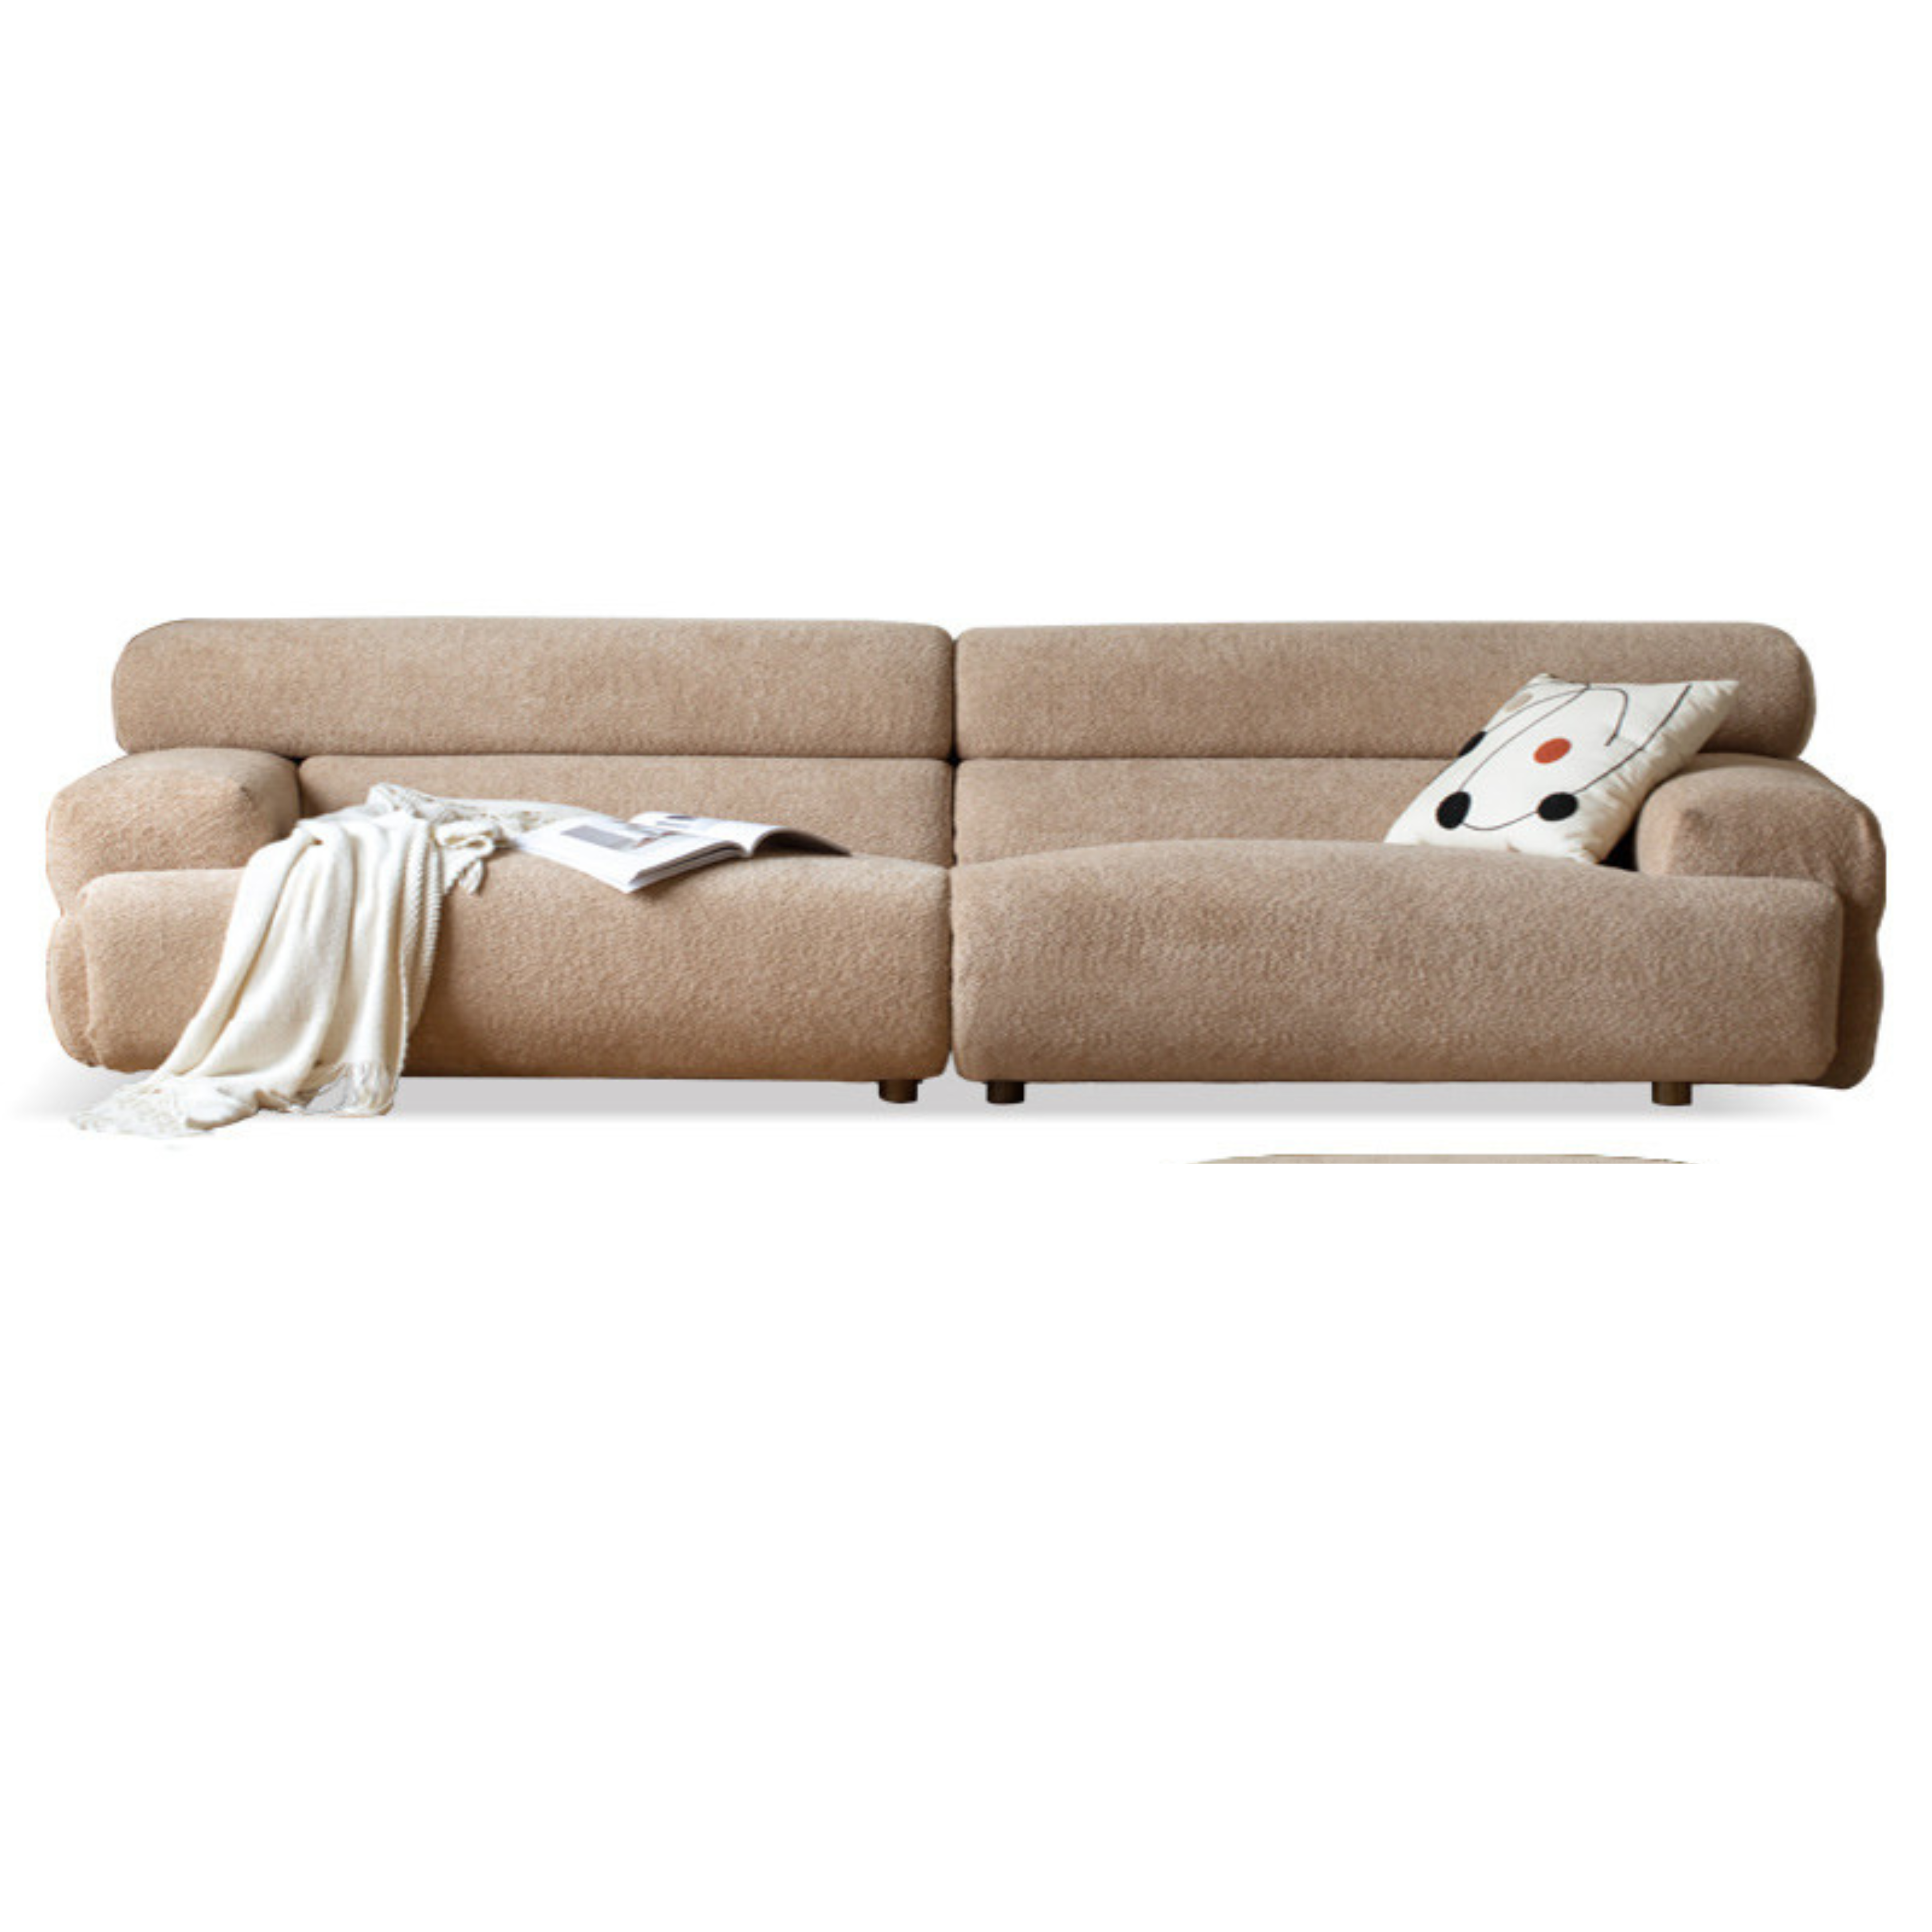 Lamb velvet sofa)